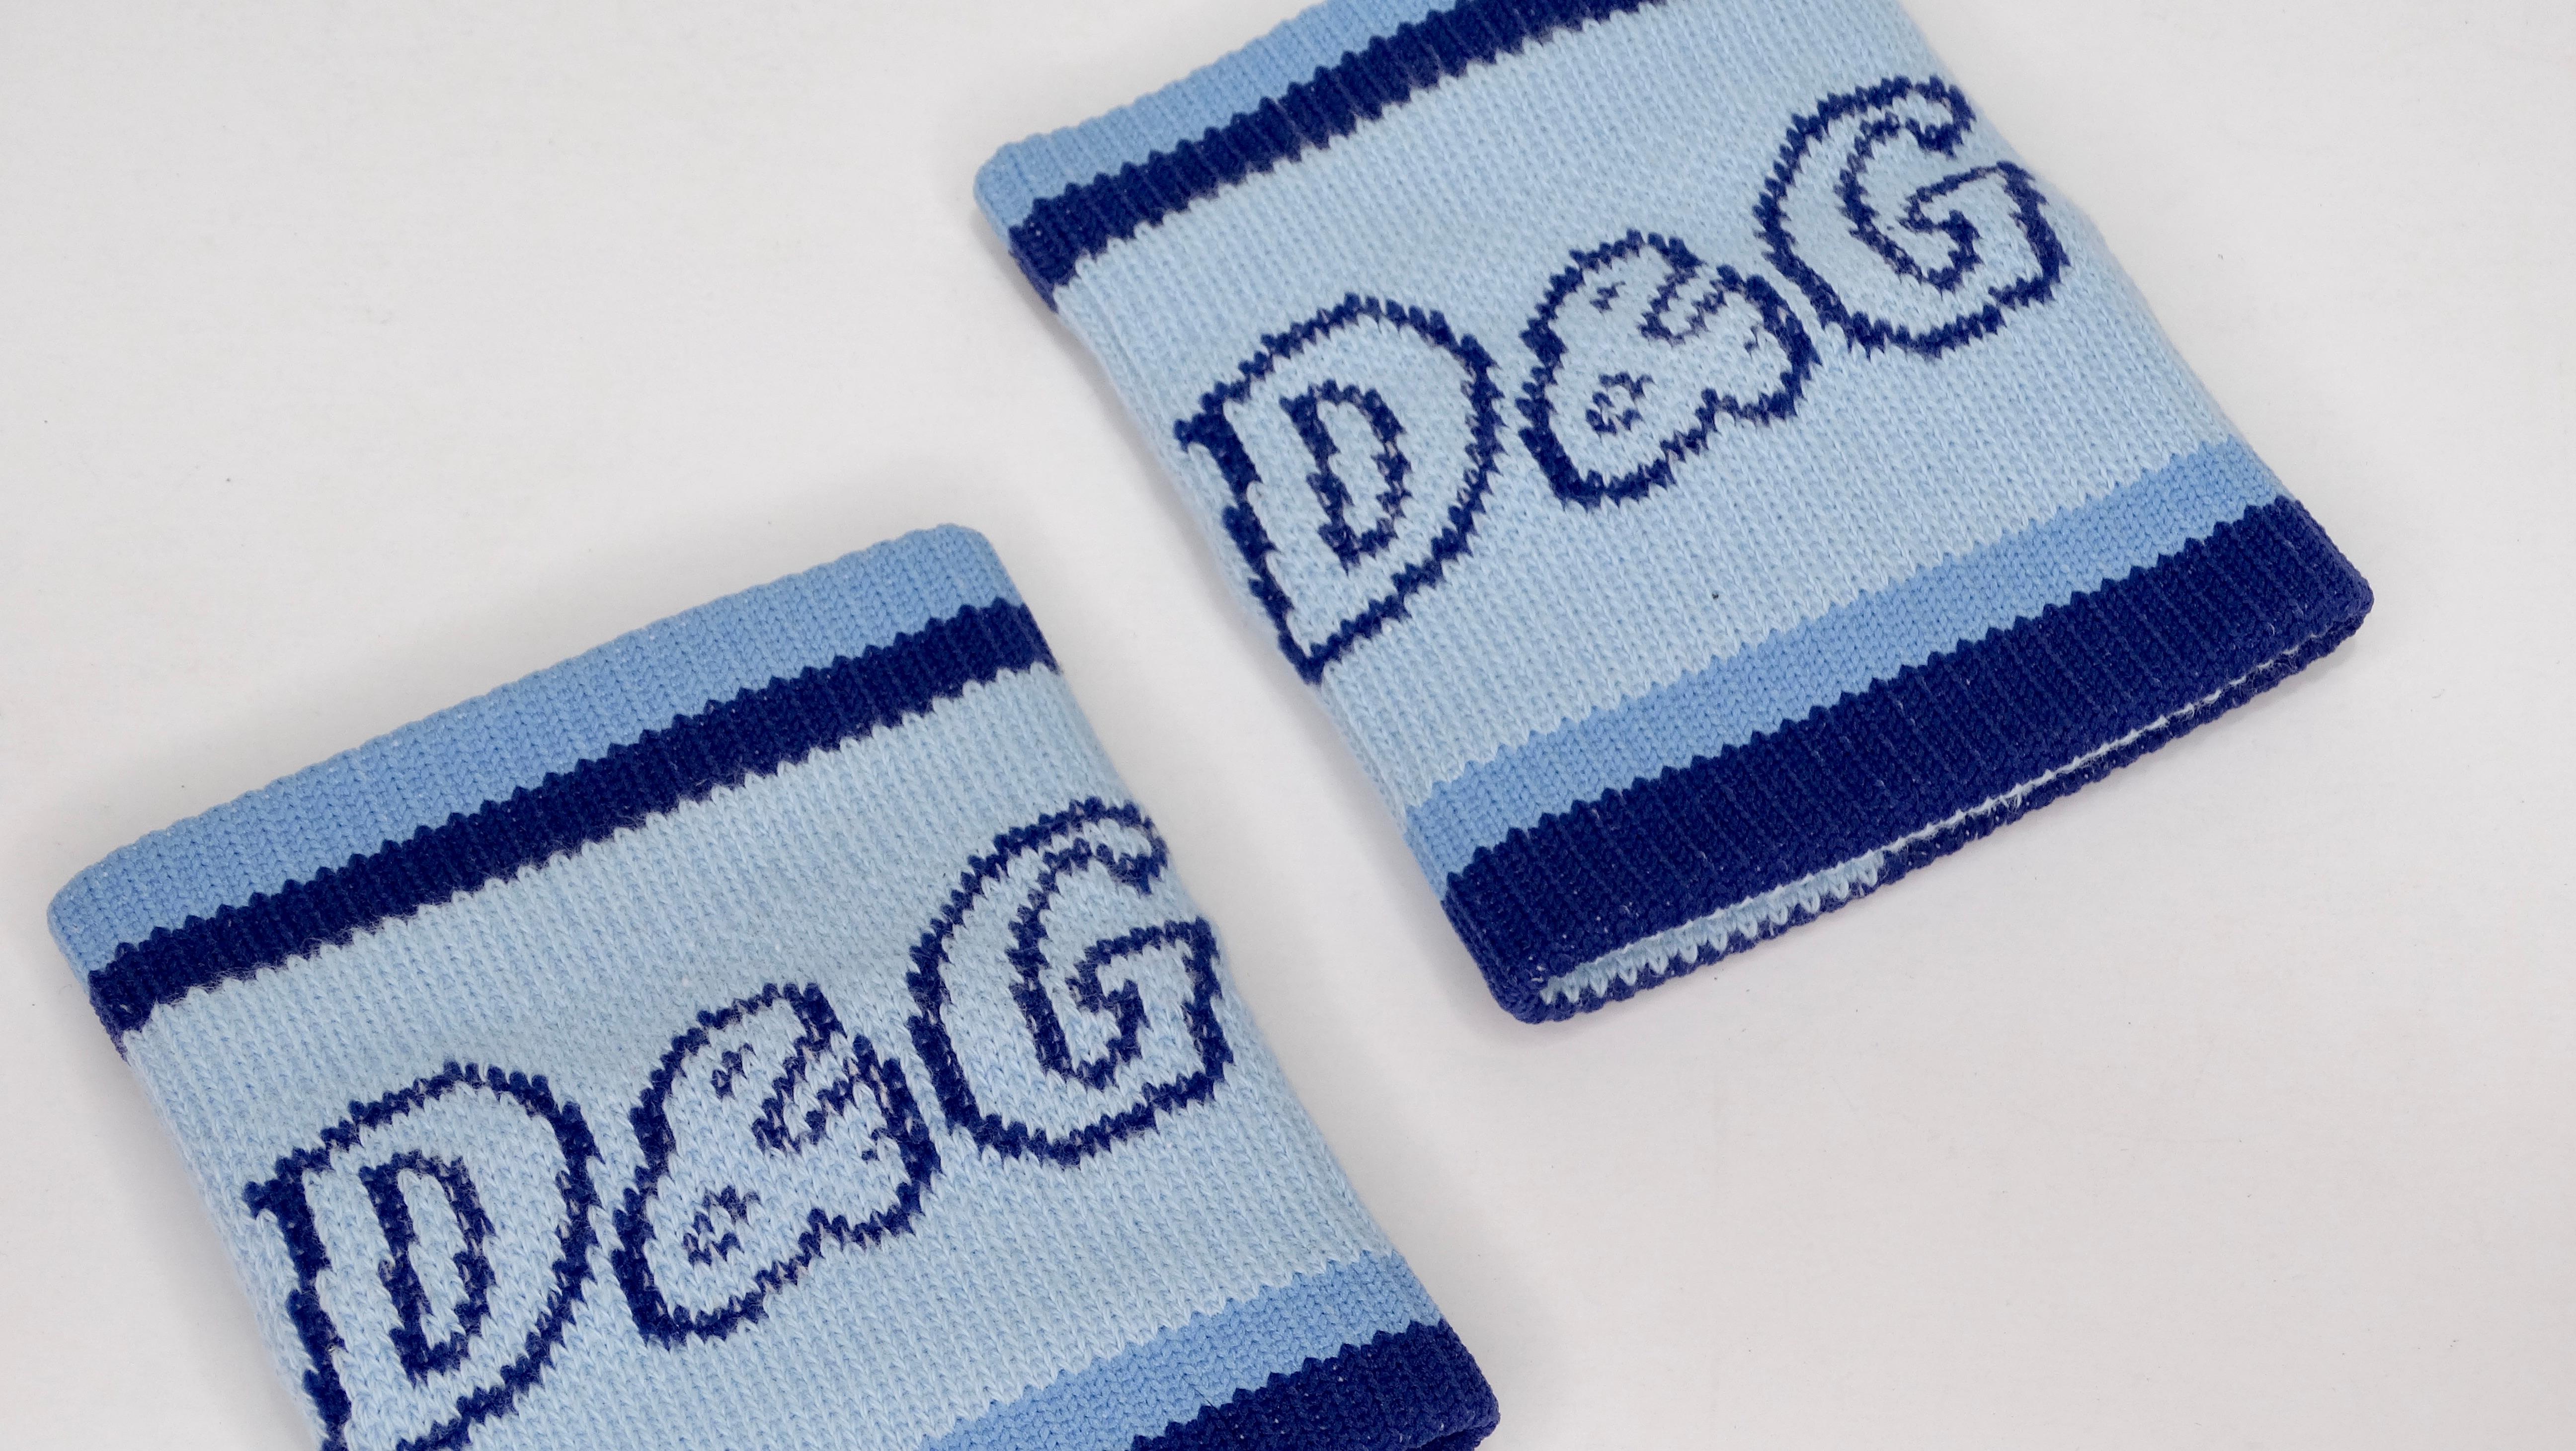 Diese Schweißbänder von Dolce & Gabbana aus den frühen 2000er Jahren sind das kultigste Accessoire für Ihren Look! Zweifarbiger blauer Stoff mit dem D&G-Logo auf der Vorderseite. Perfekt, um sie mit Ihren Lieblingsarmbändern zu kombinieren. Sie